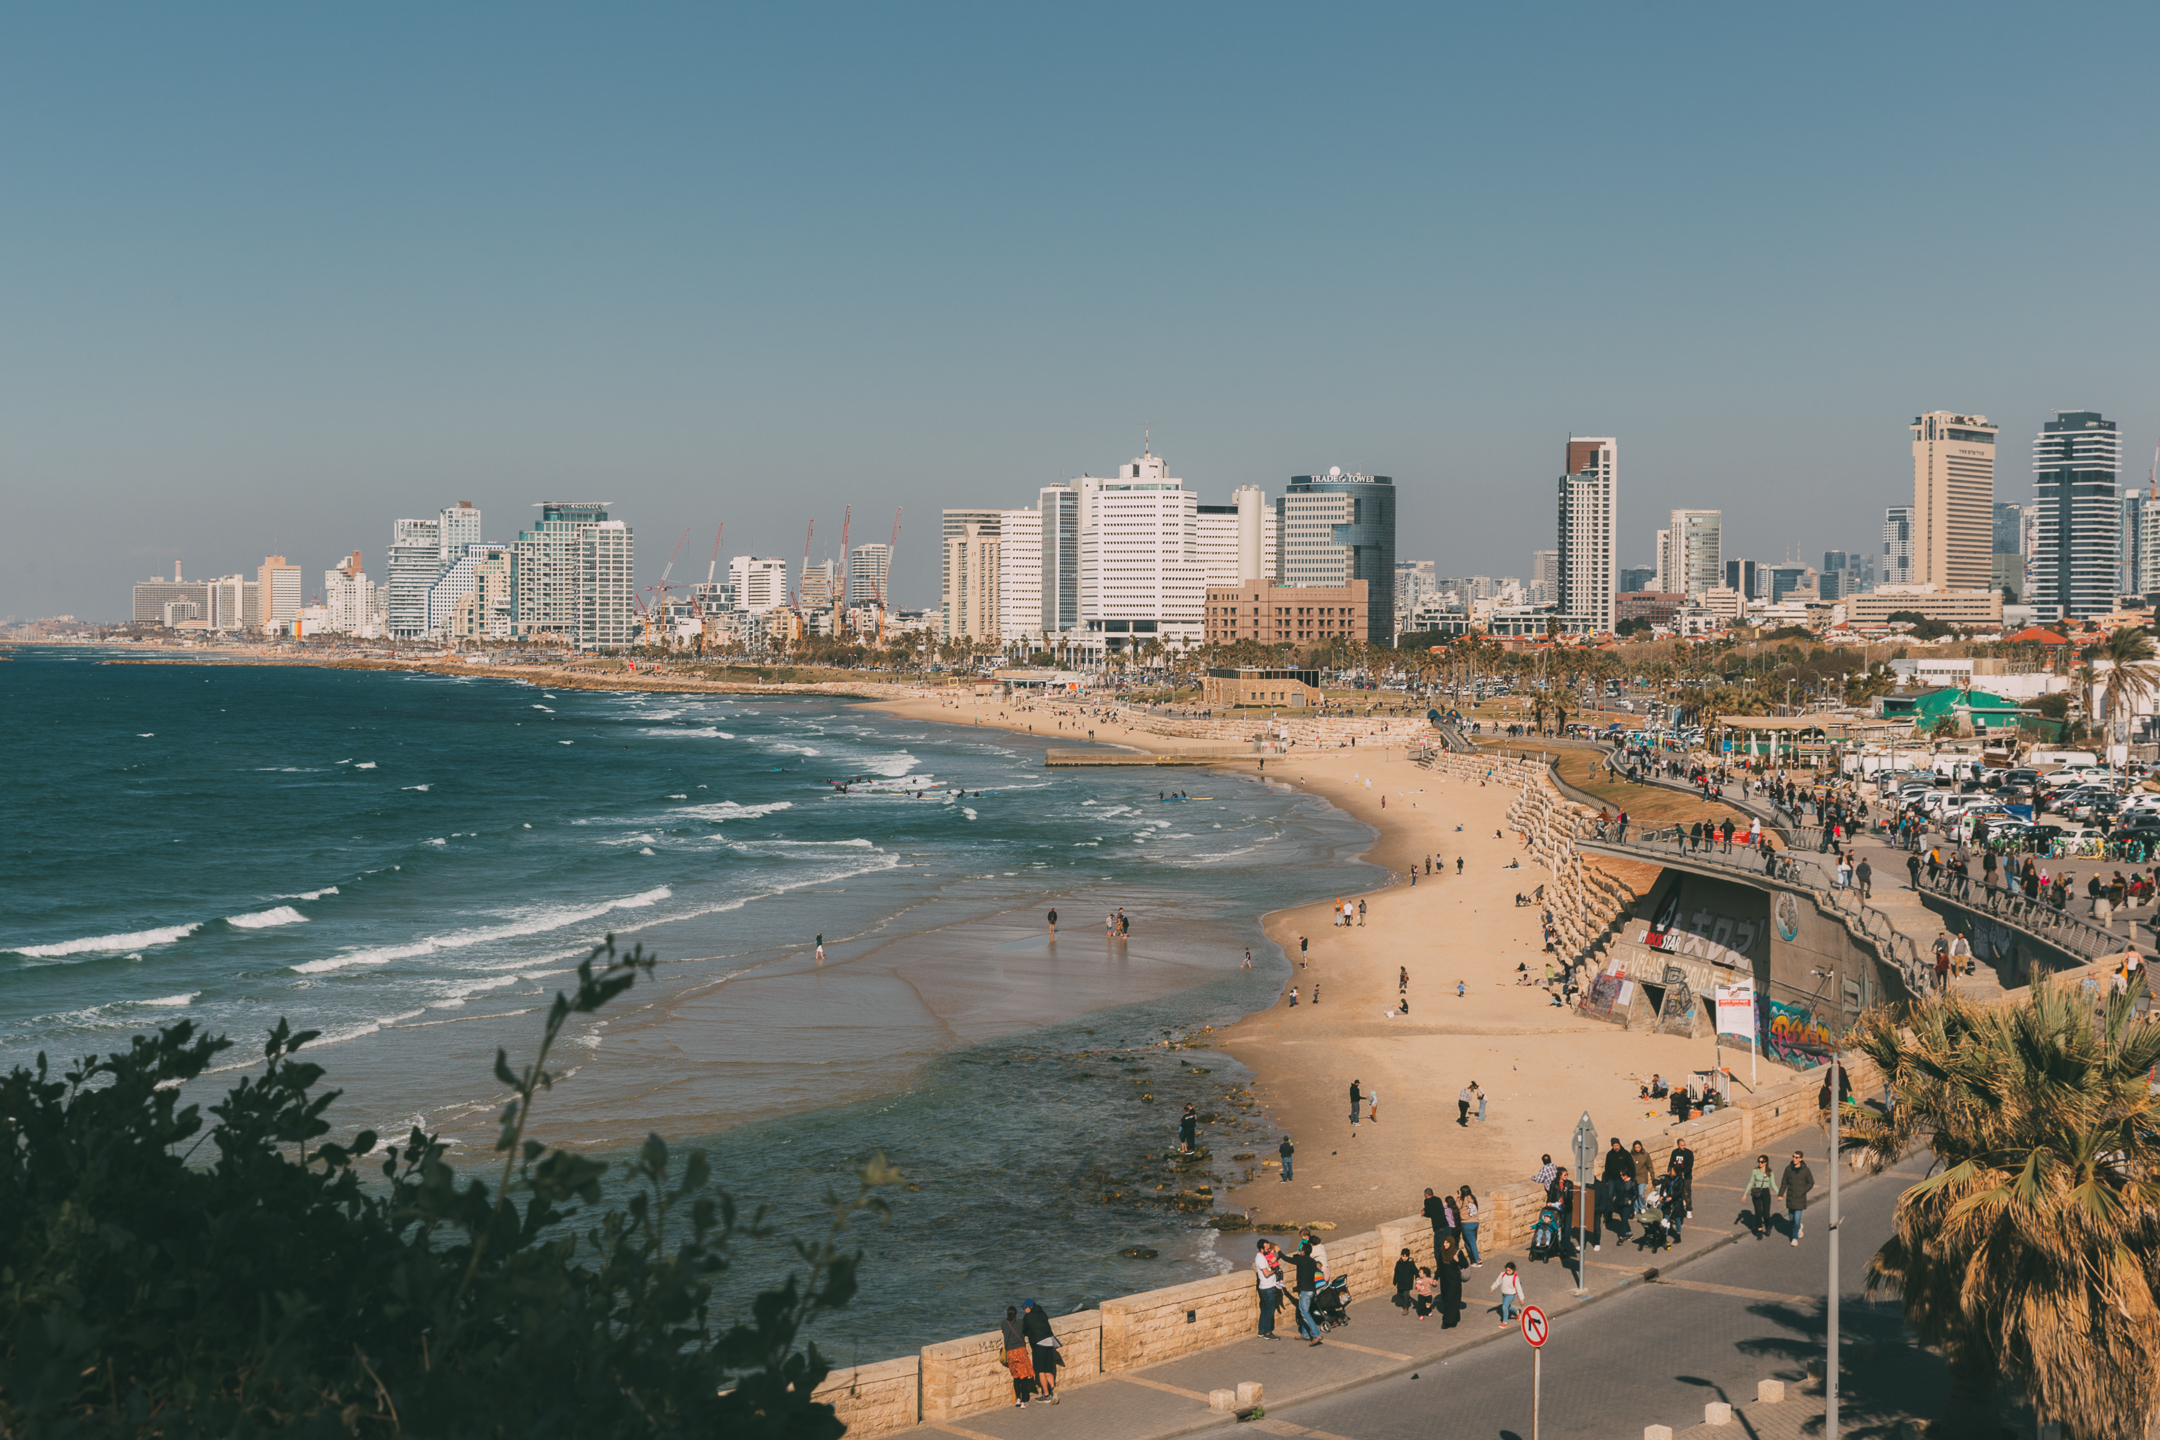 My Solo trip to Tel Aviv